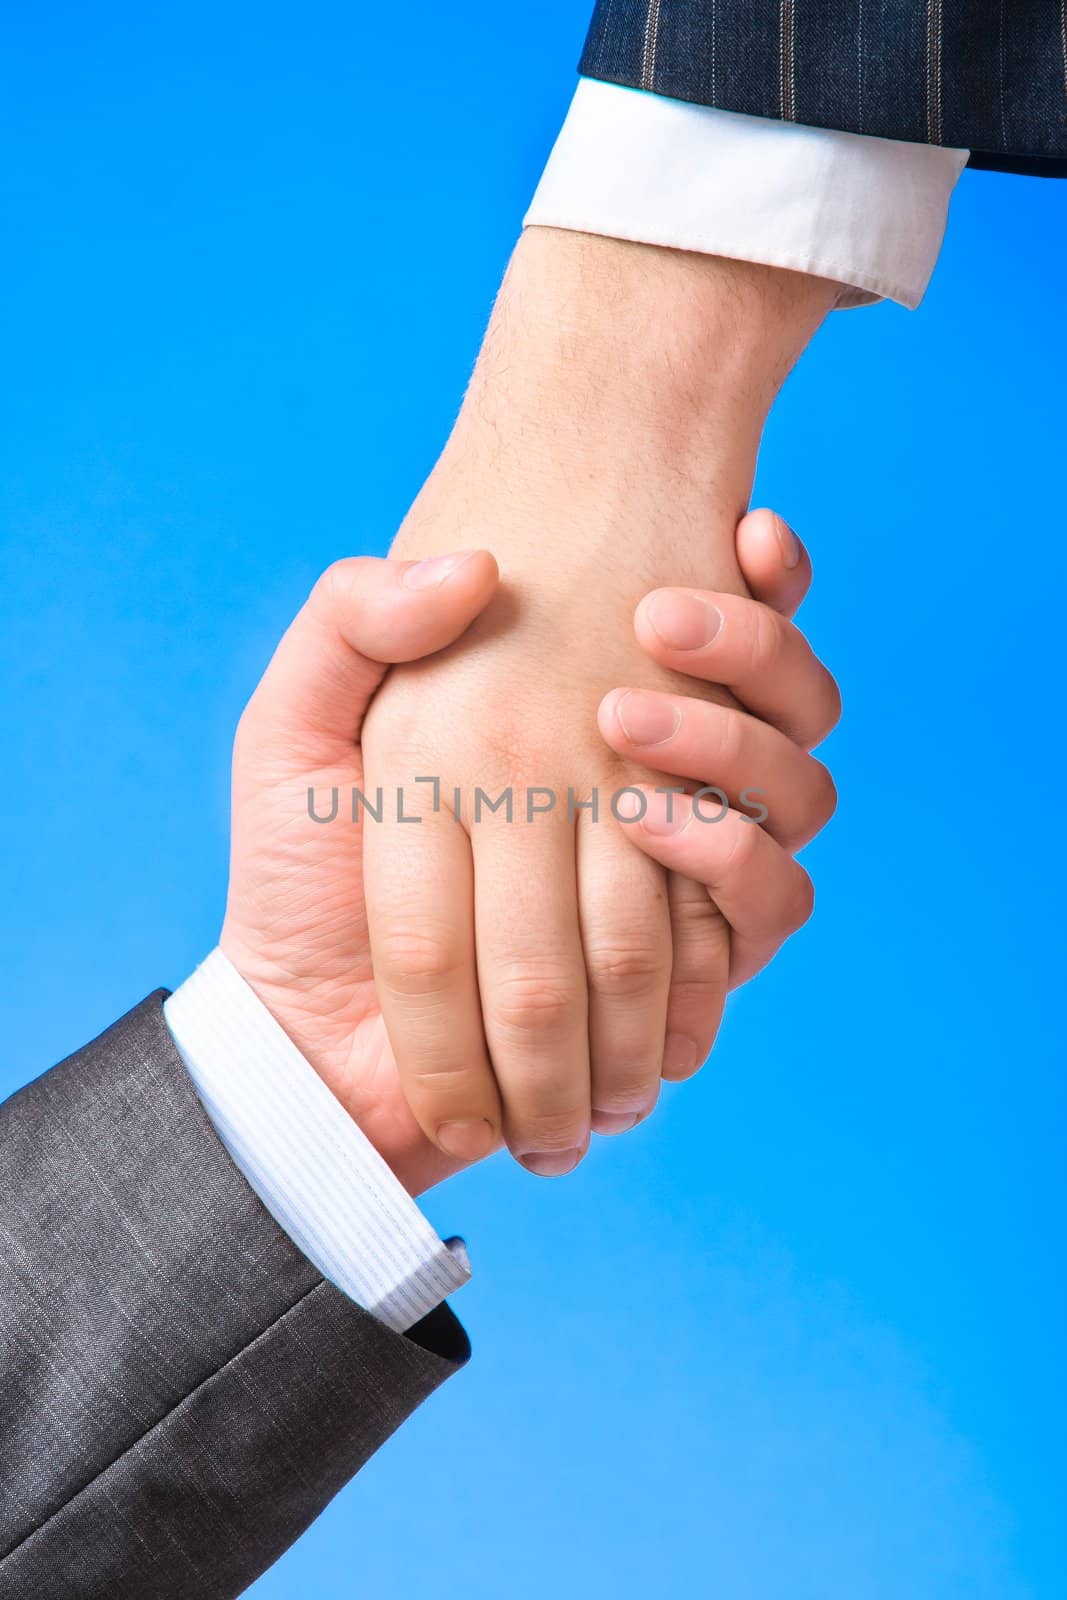 Closeup of a handshake between two business men